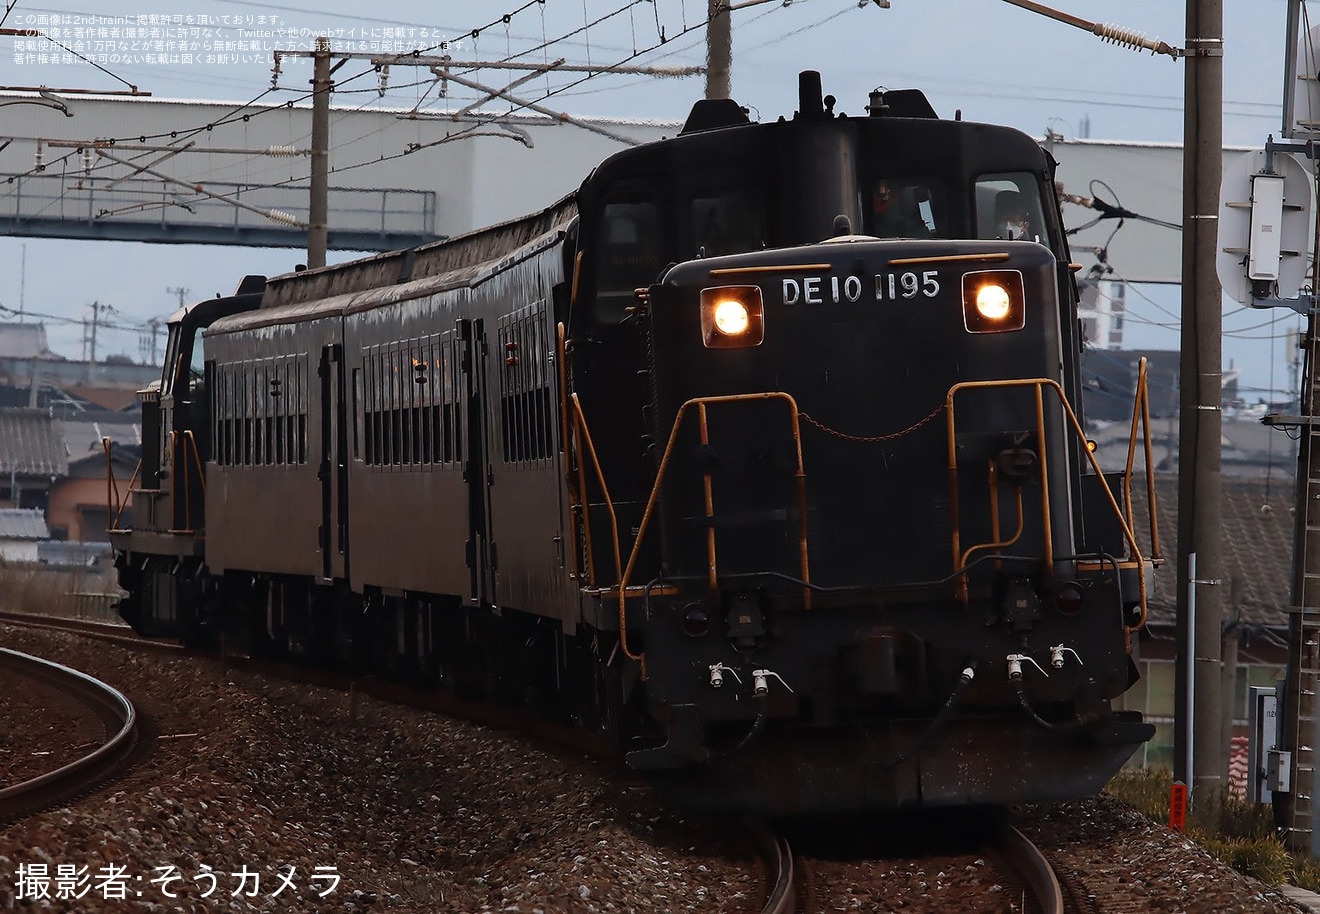 【JR九】415系見学「日豊本線特別運行SL人吉の客車で行く門司港の旅」ツアーを催行の拡大写真